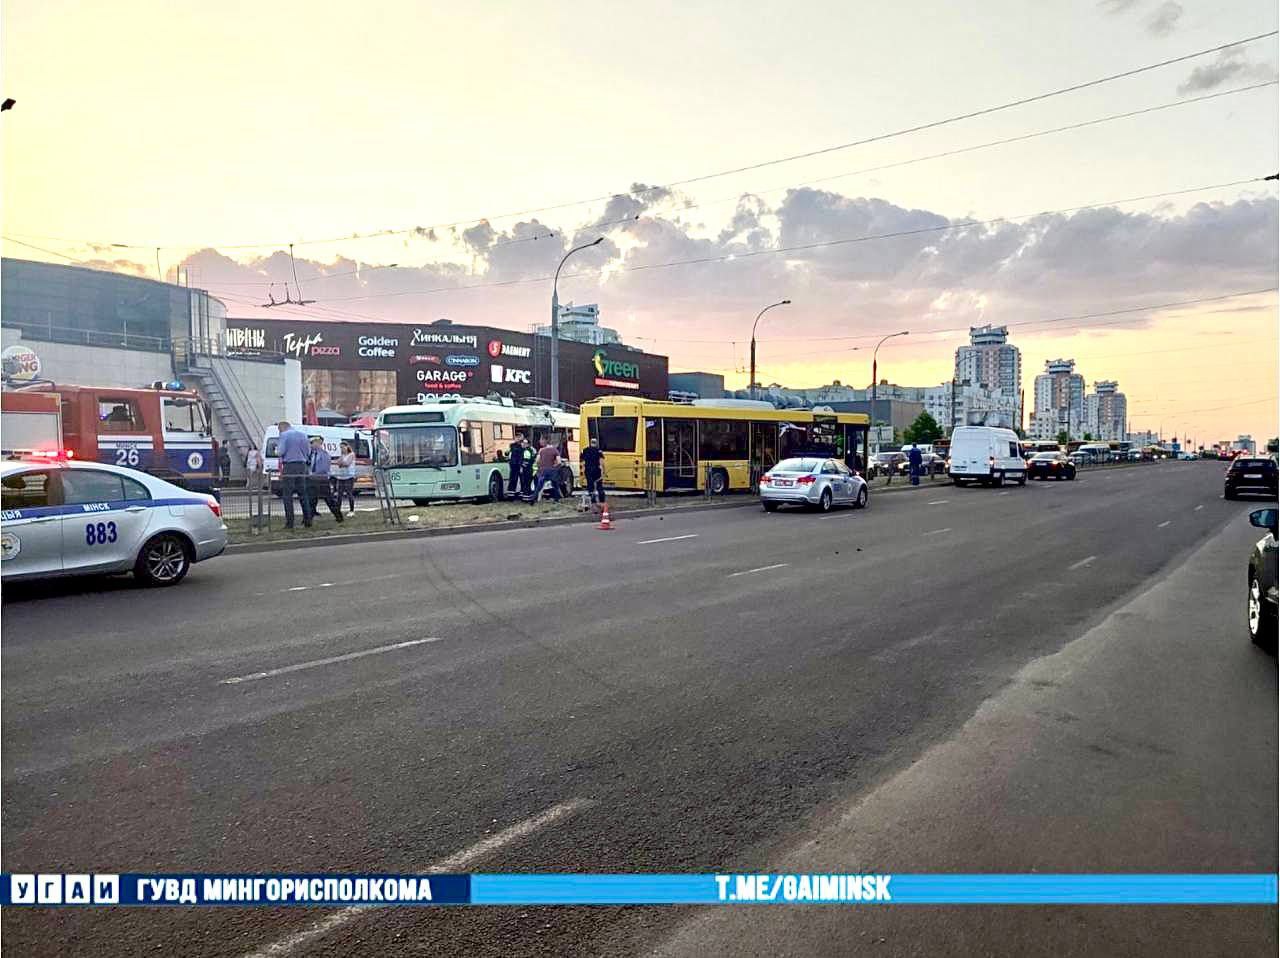 Автобус, троллейбус и Geely столкнулись в Минске. Пострадали семь пассажиров